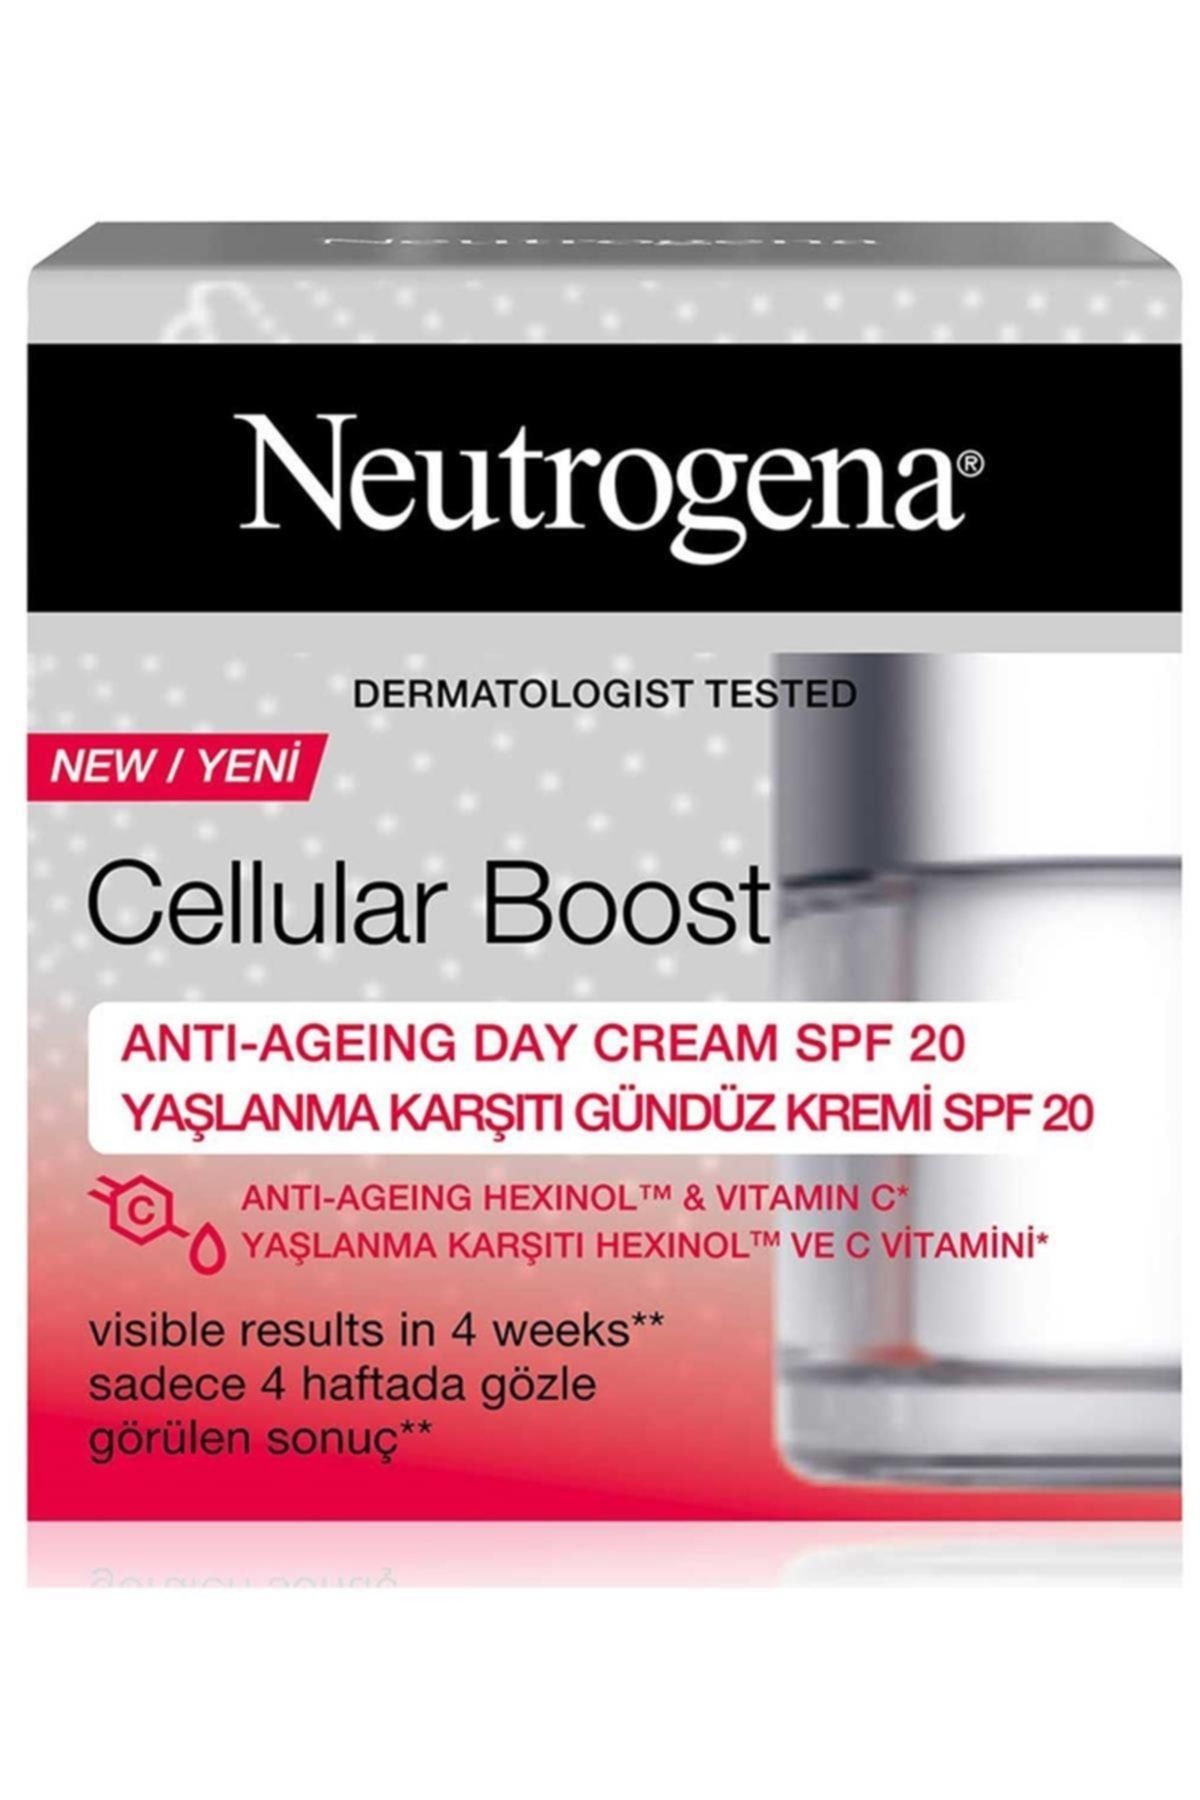 Neutrogena Marka: Cellular Boost Yaşlanma Karşıtı Gündüz Kremi 50 Ml Kategori: Yüz Kremi